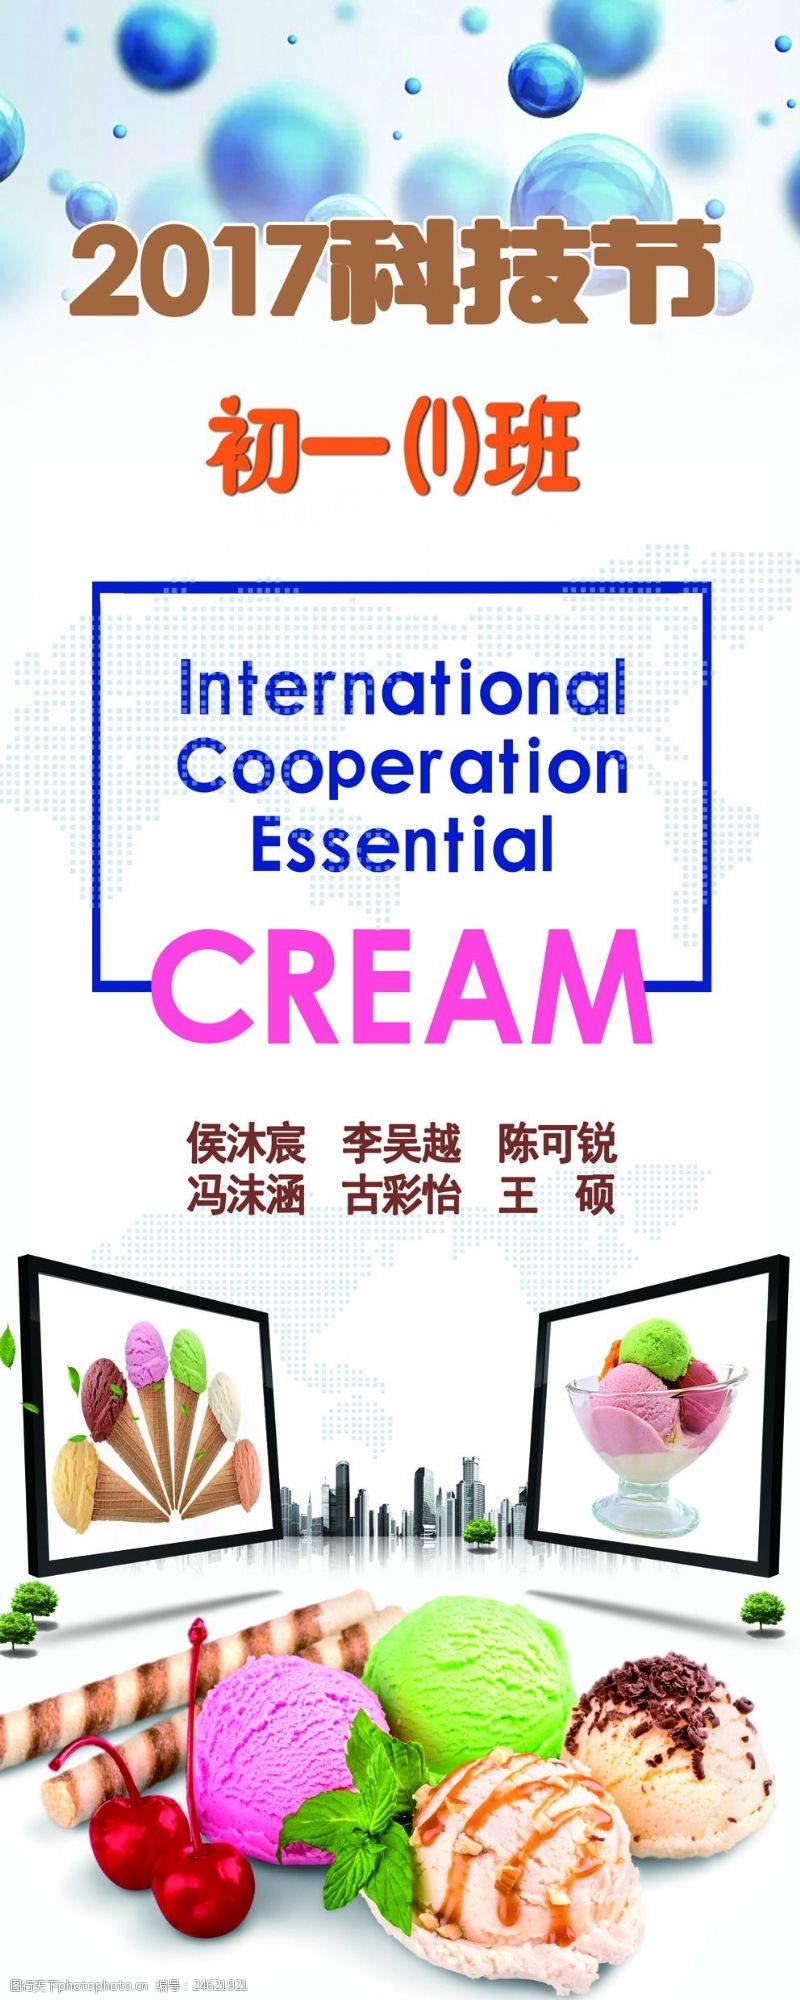 cream科技节冰淇淋